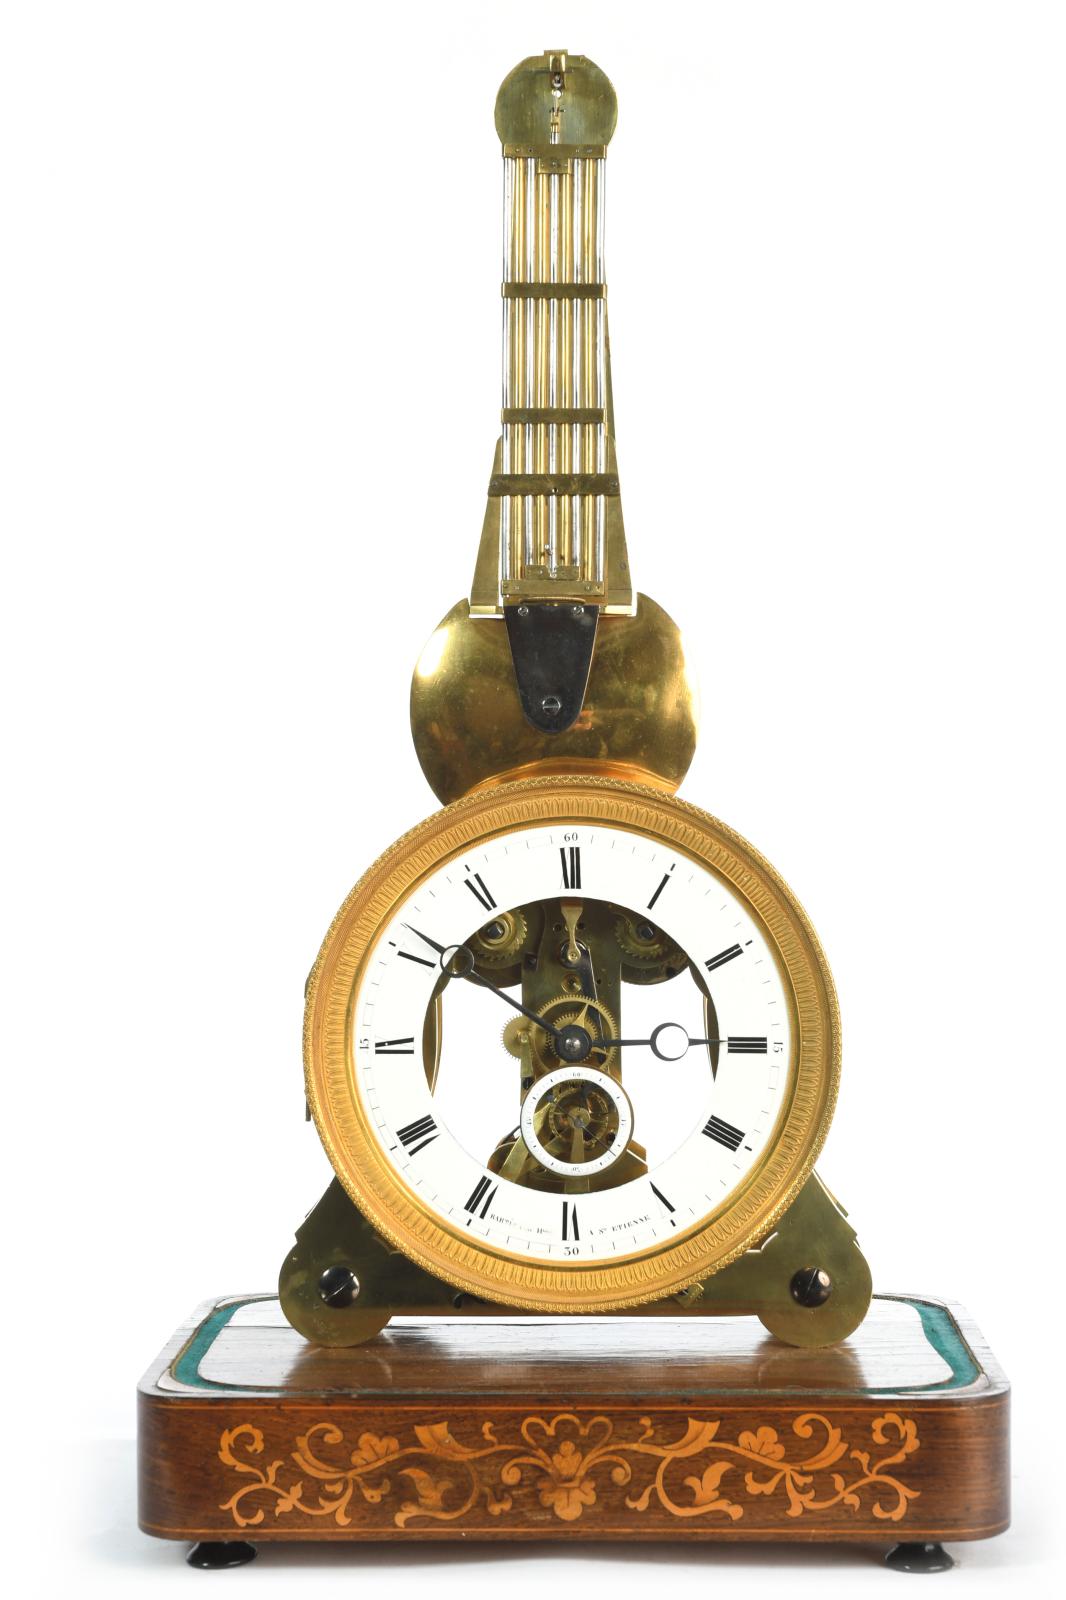 Parmi les pendules et horloges proposées dans cette vacation, on remarque un régulateur de précision dans le style de Verneuil, réalisé à Saint-Étienn